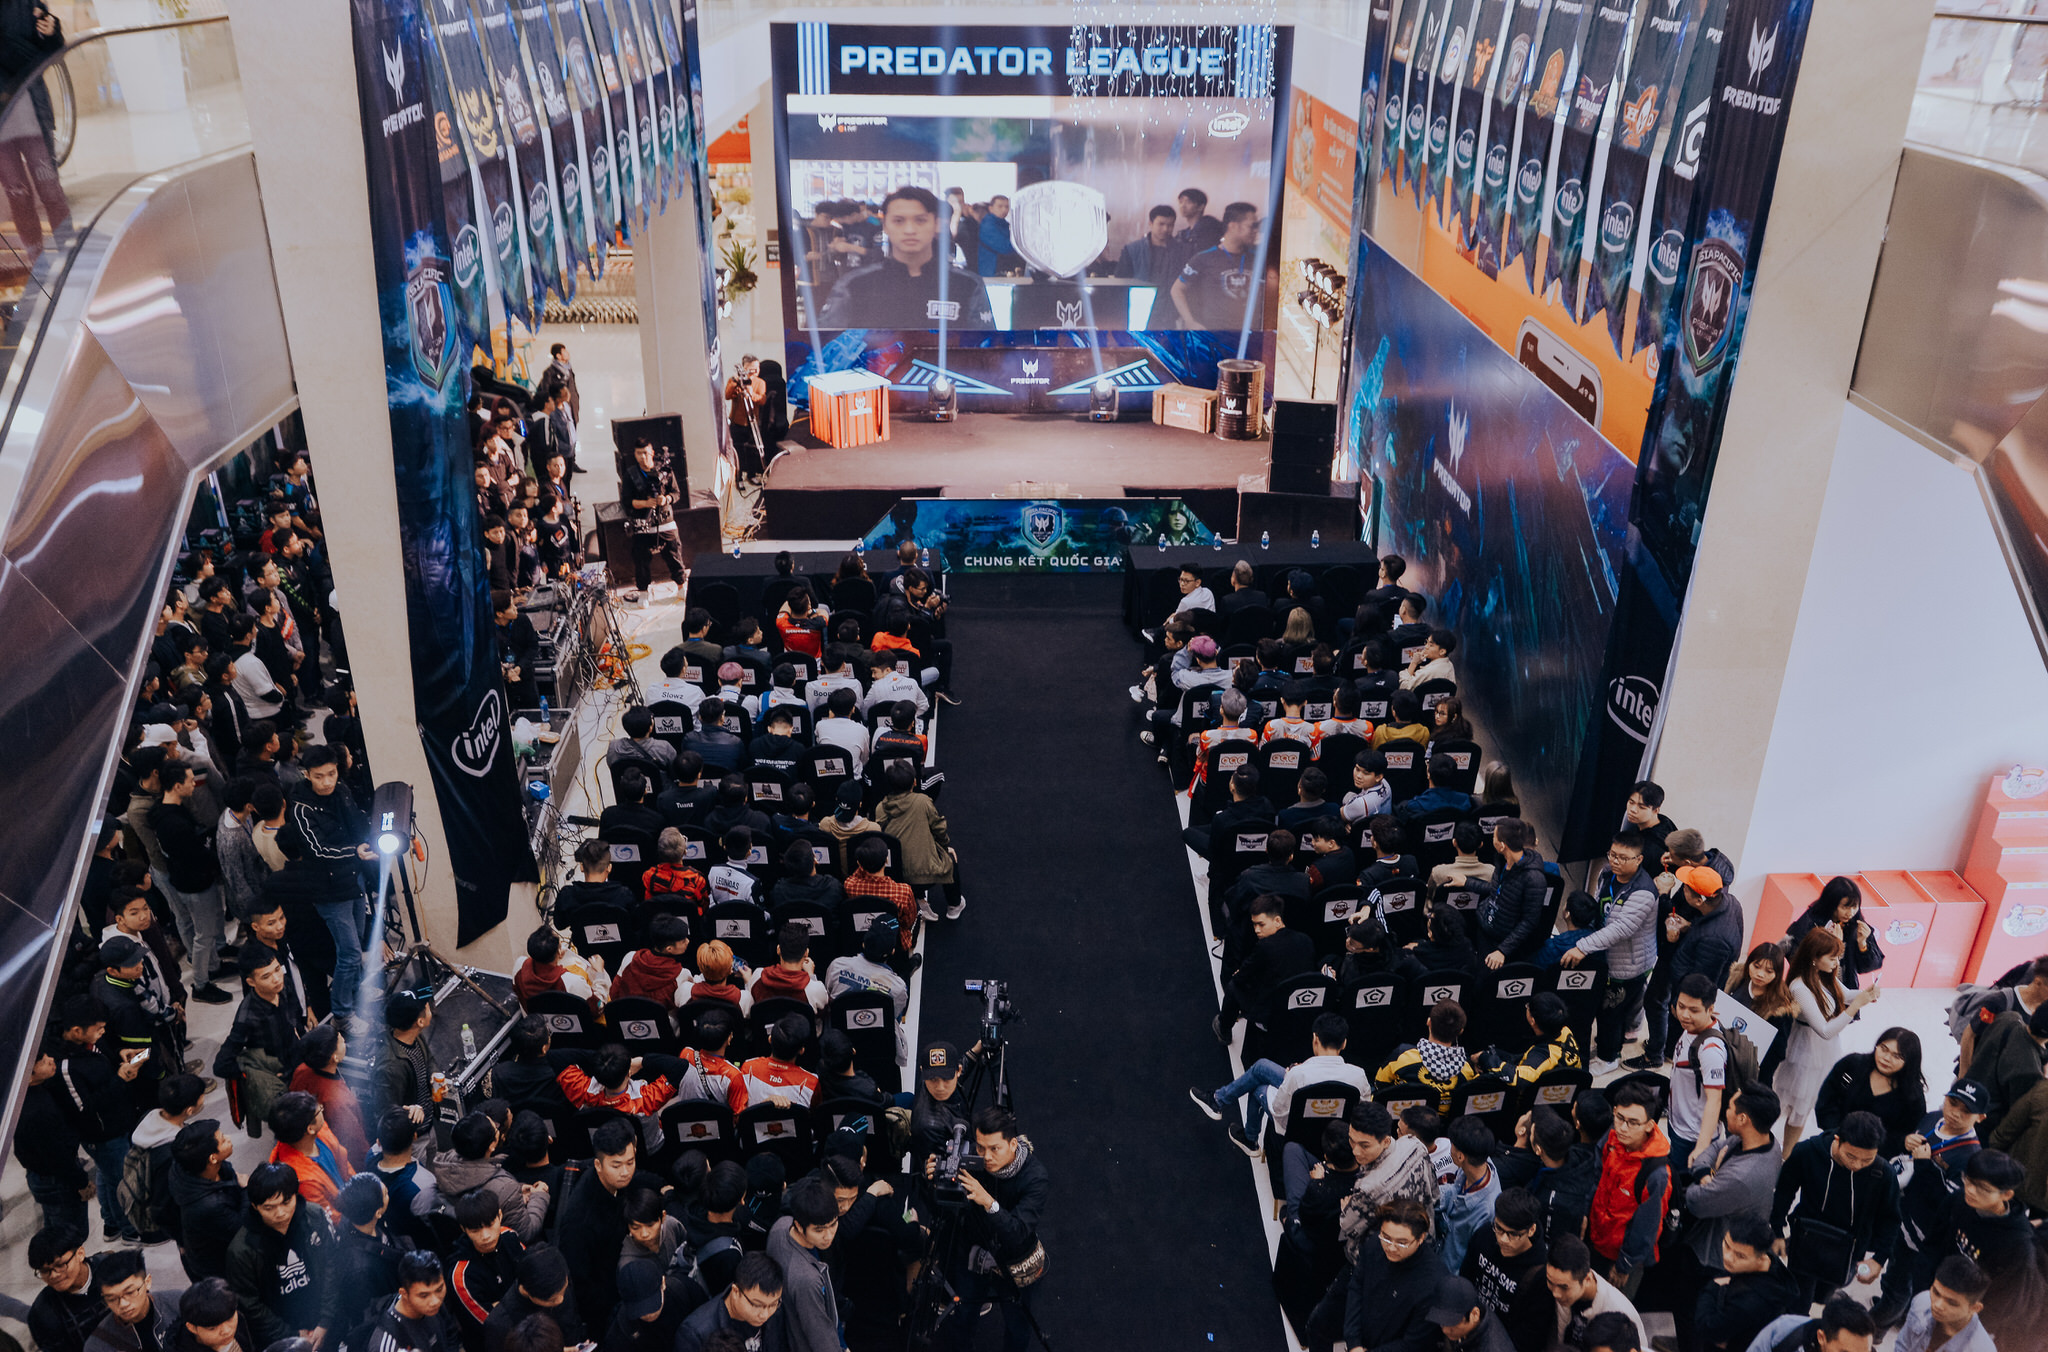 GameHome Esports lên ngôi vô địch tại chung kết Predator League 2019